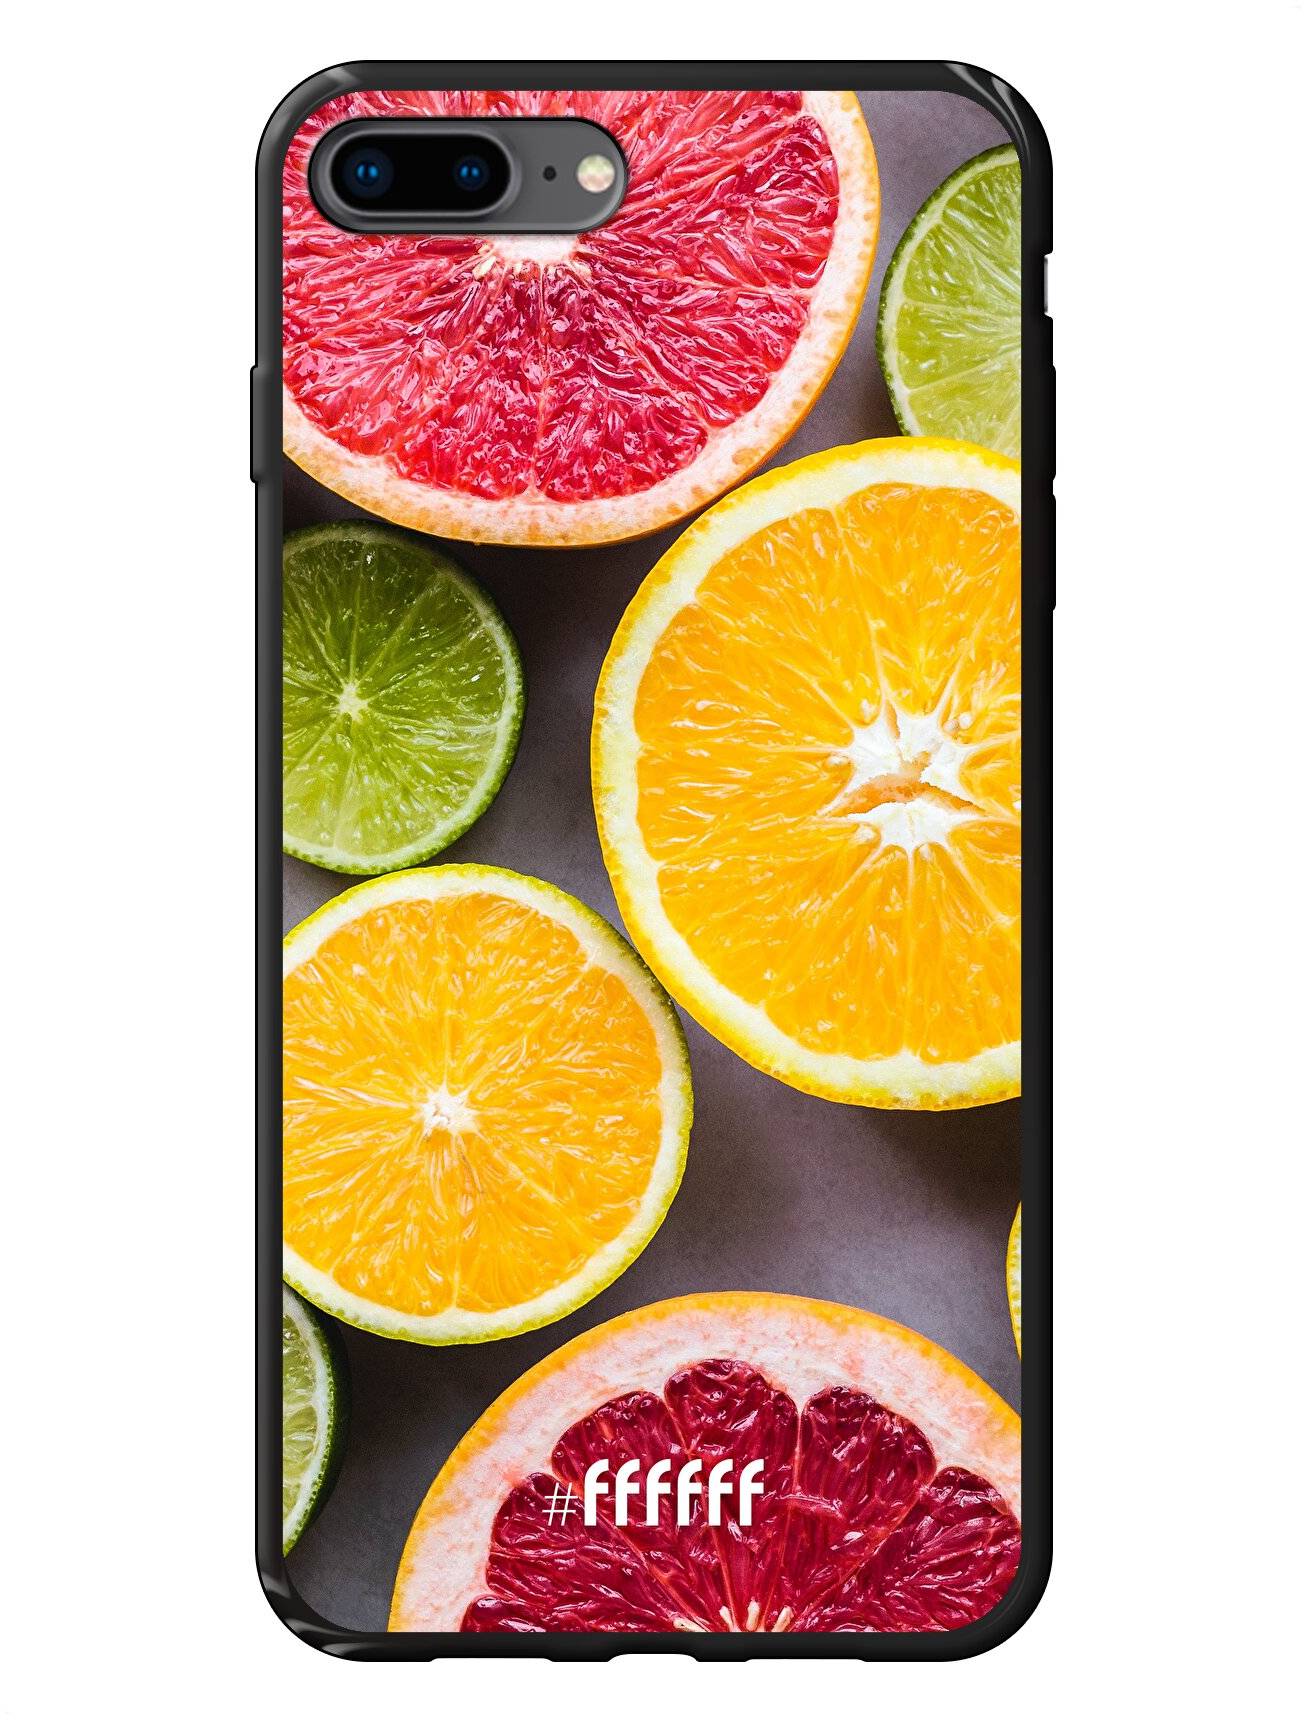 Citrus Fruit iPhone 7 Plus